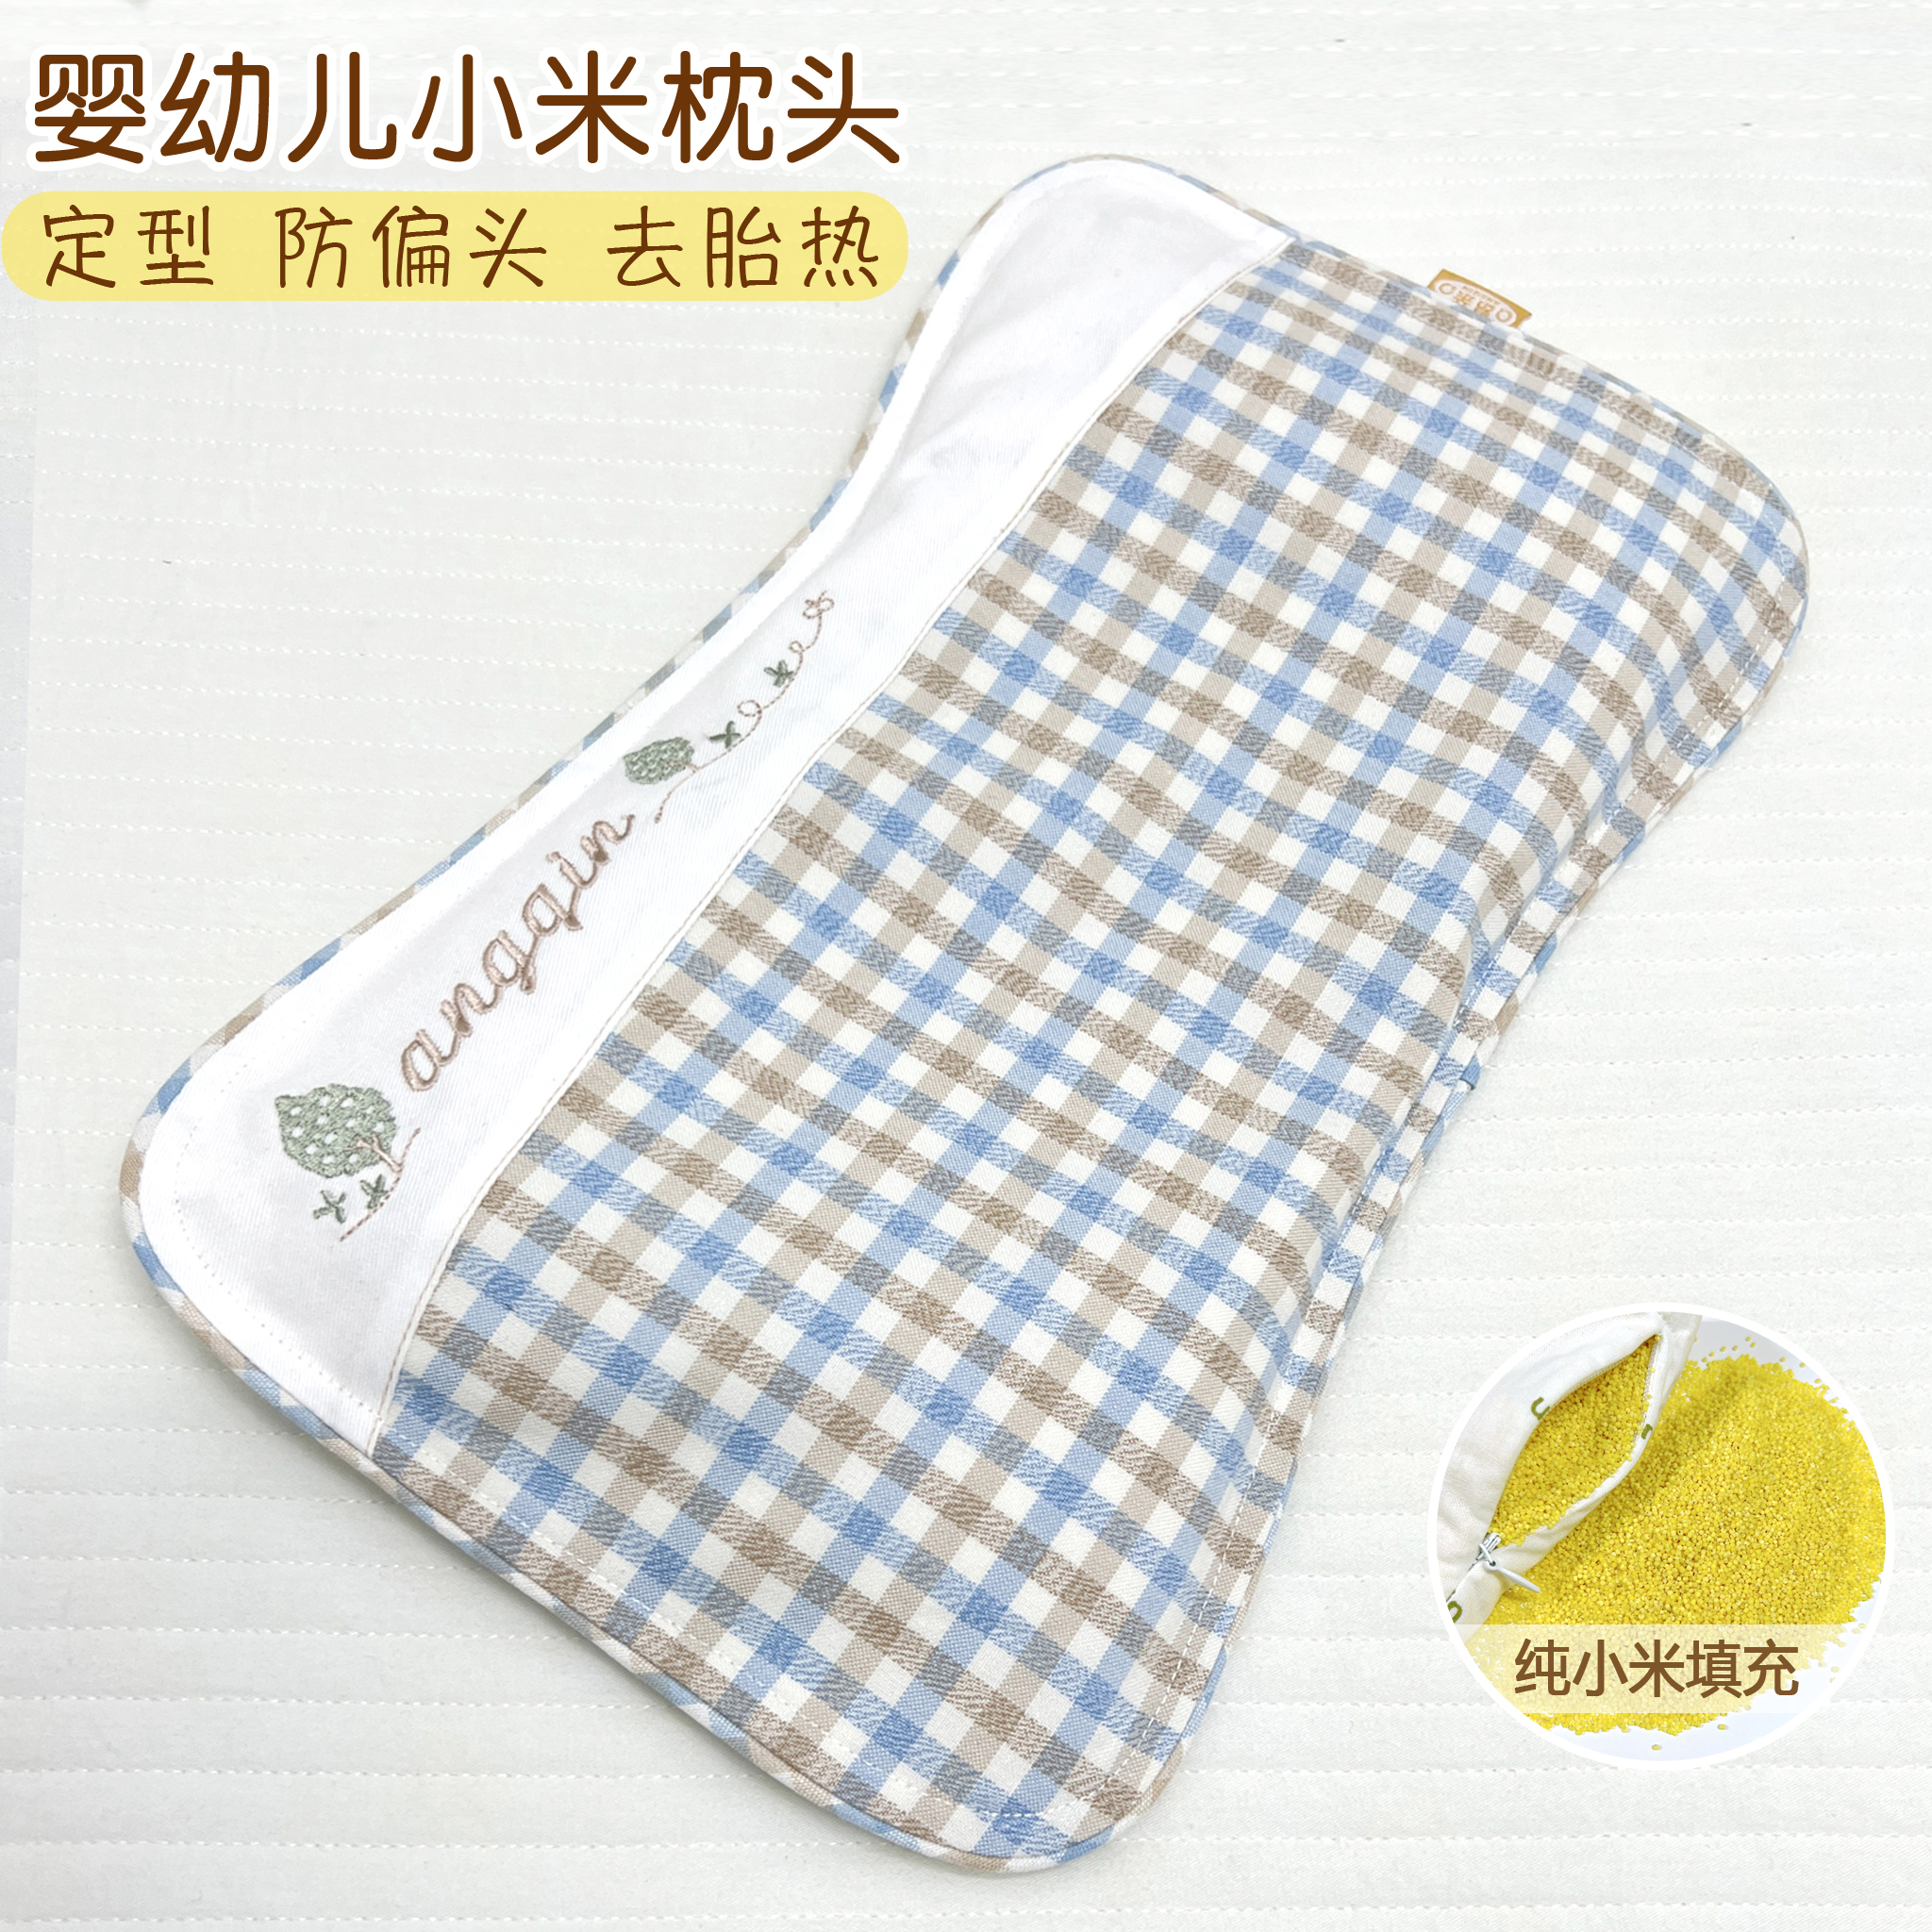 婴儿小米枕头米袋苎麻枕套宝宝定型枕矫正扁头神器防偏头夏季吸汗